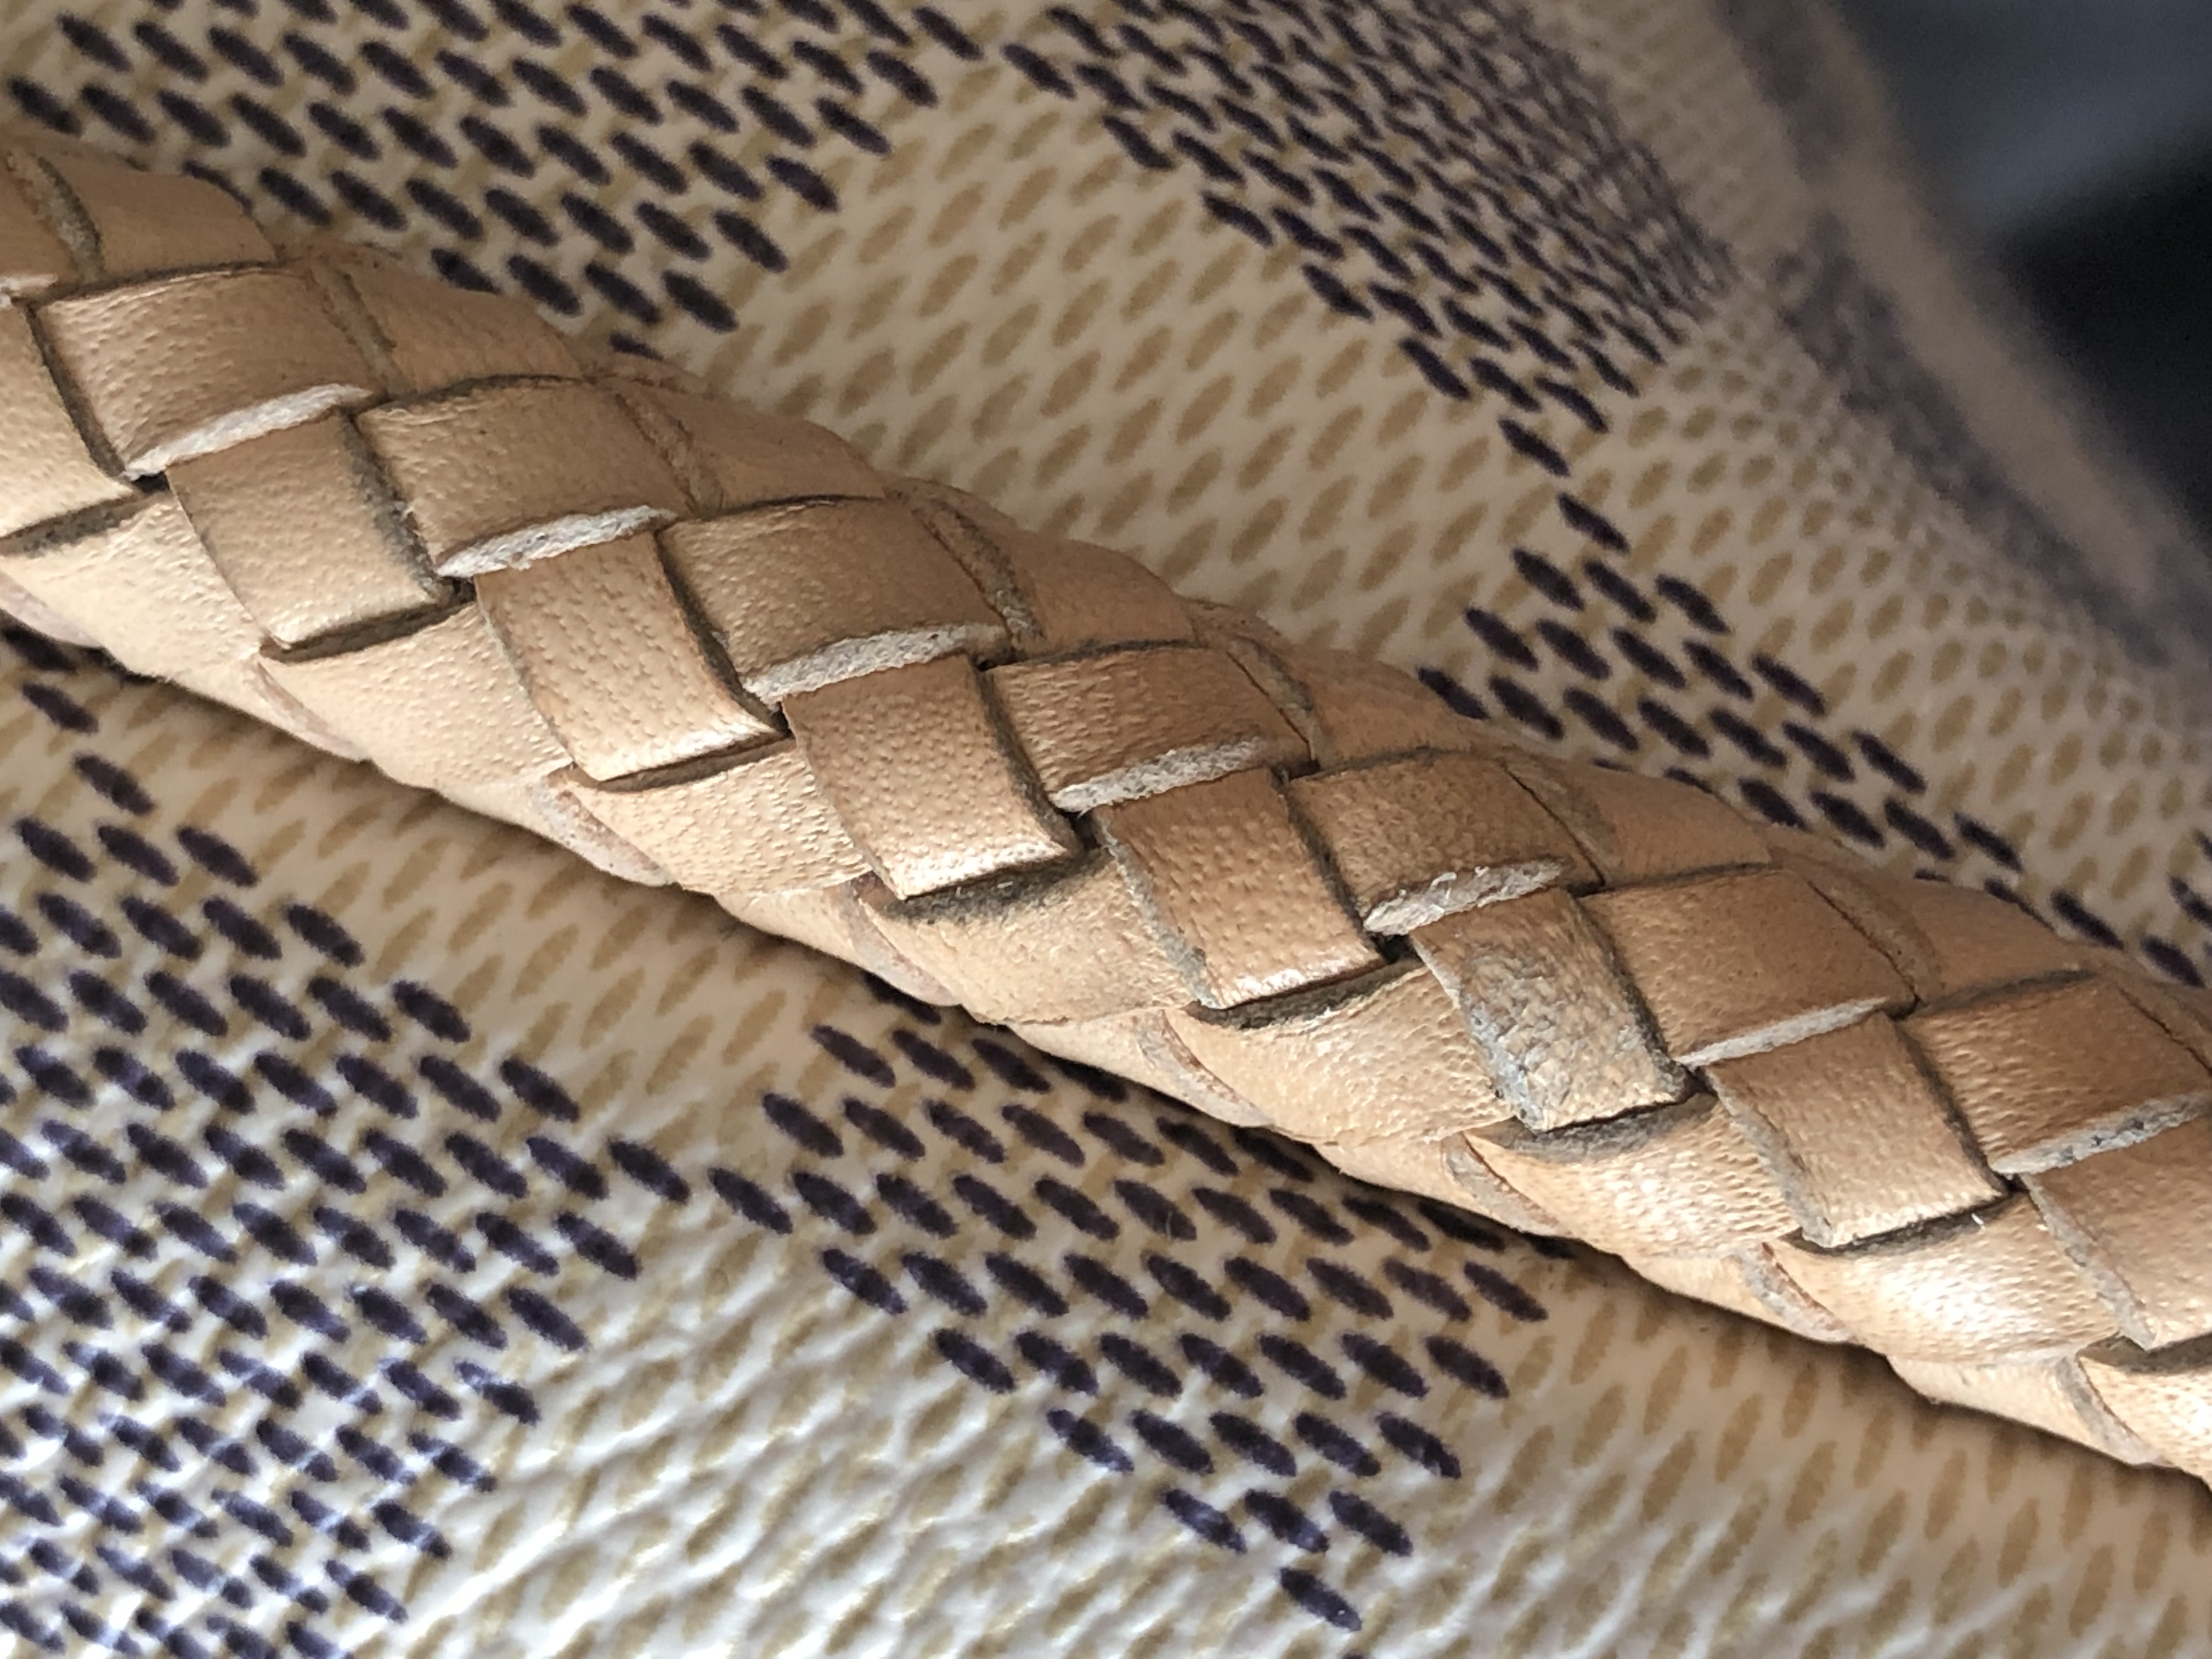 Louis vuitton Azur - vachetta braided handles restore